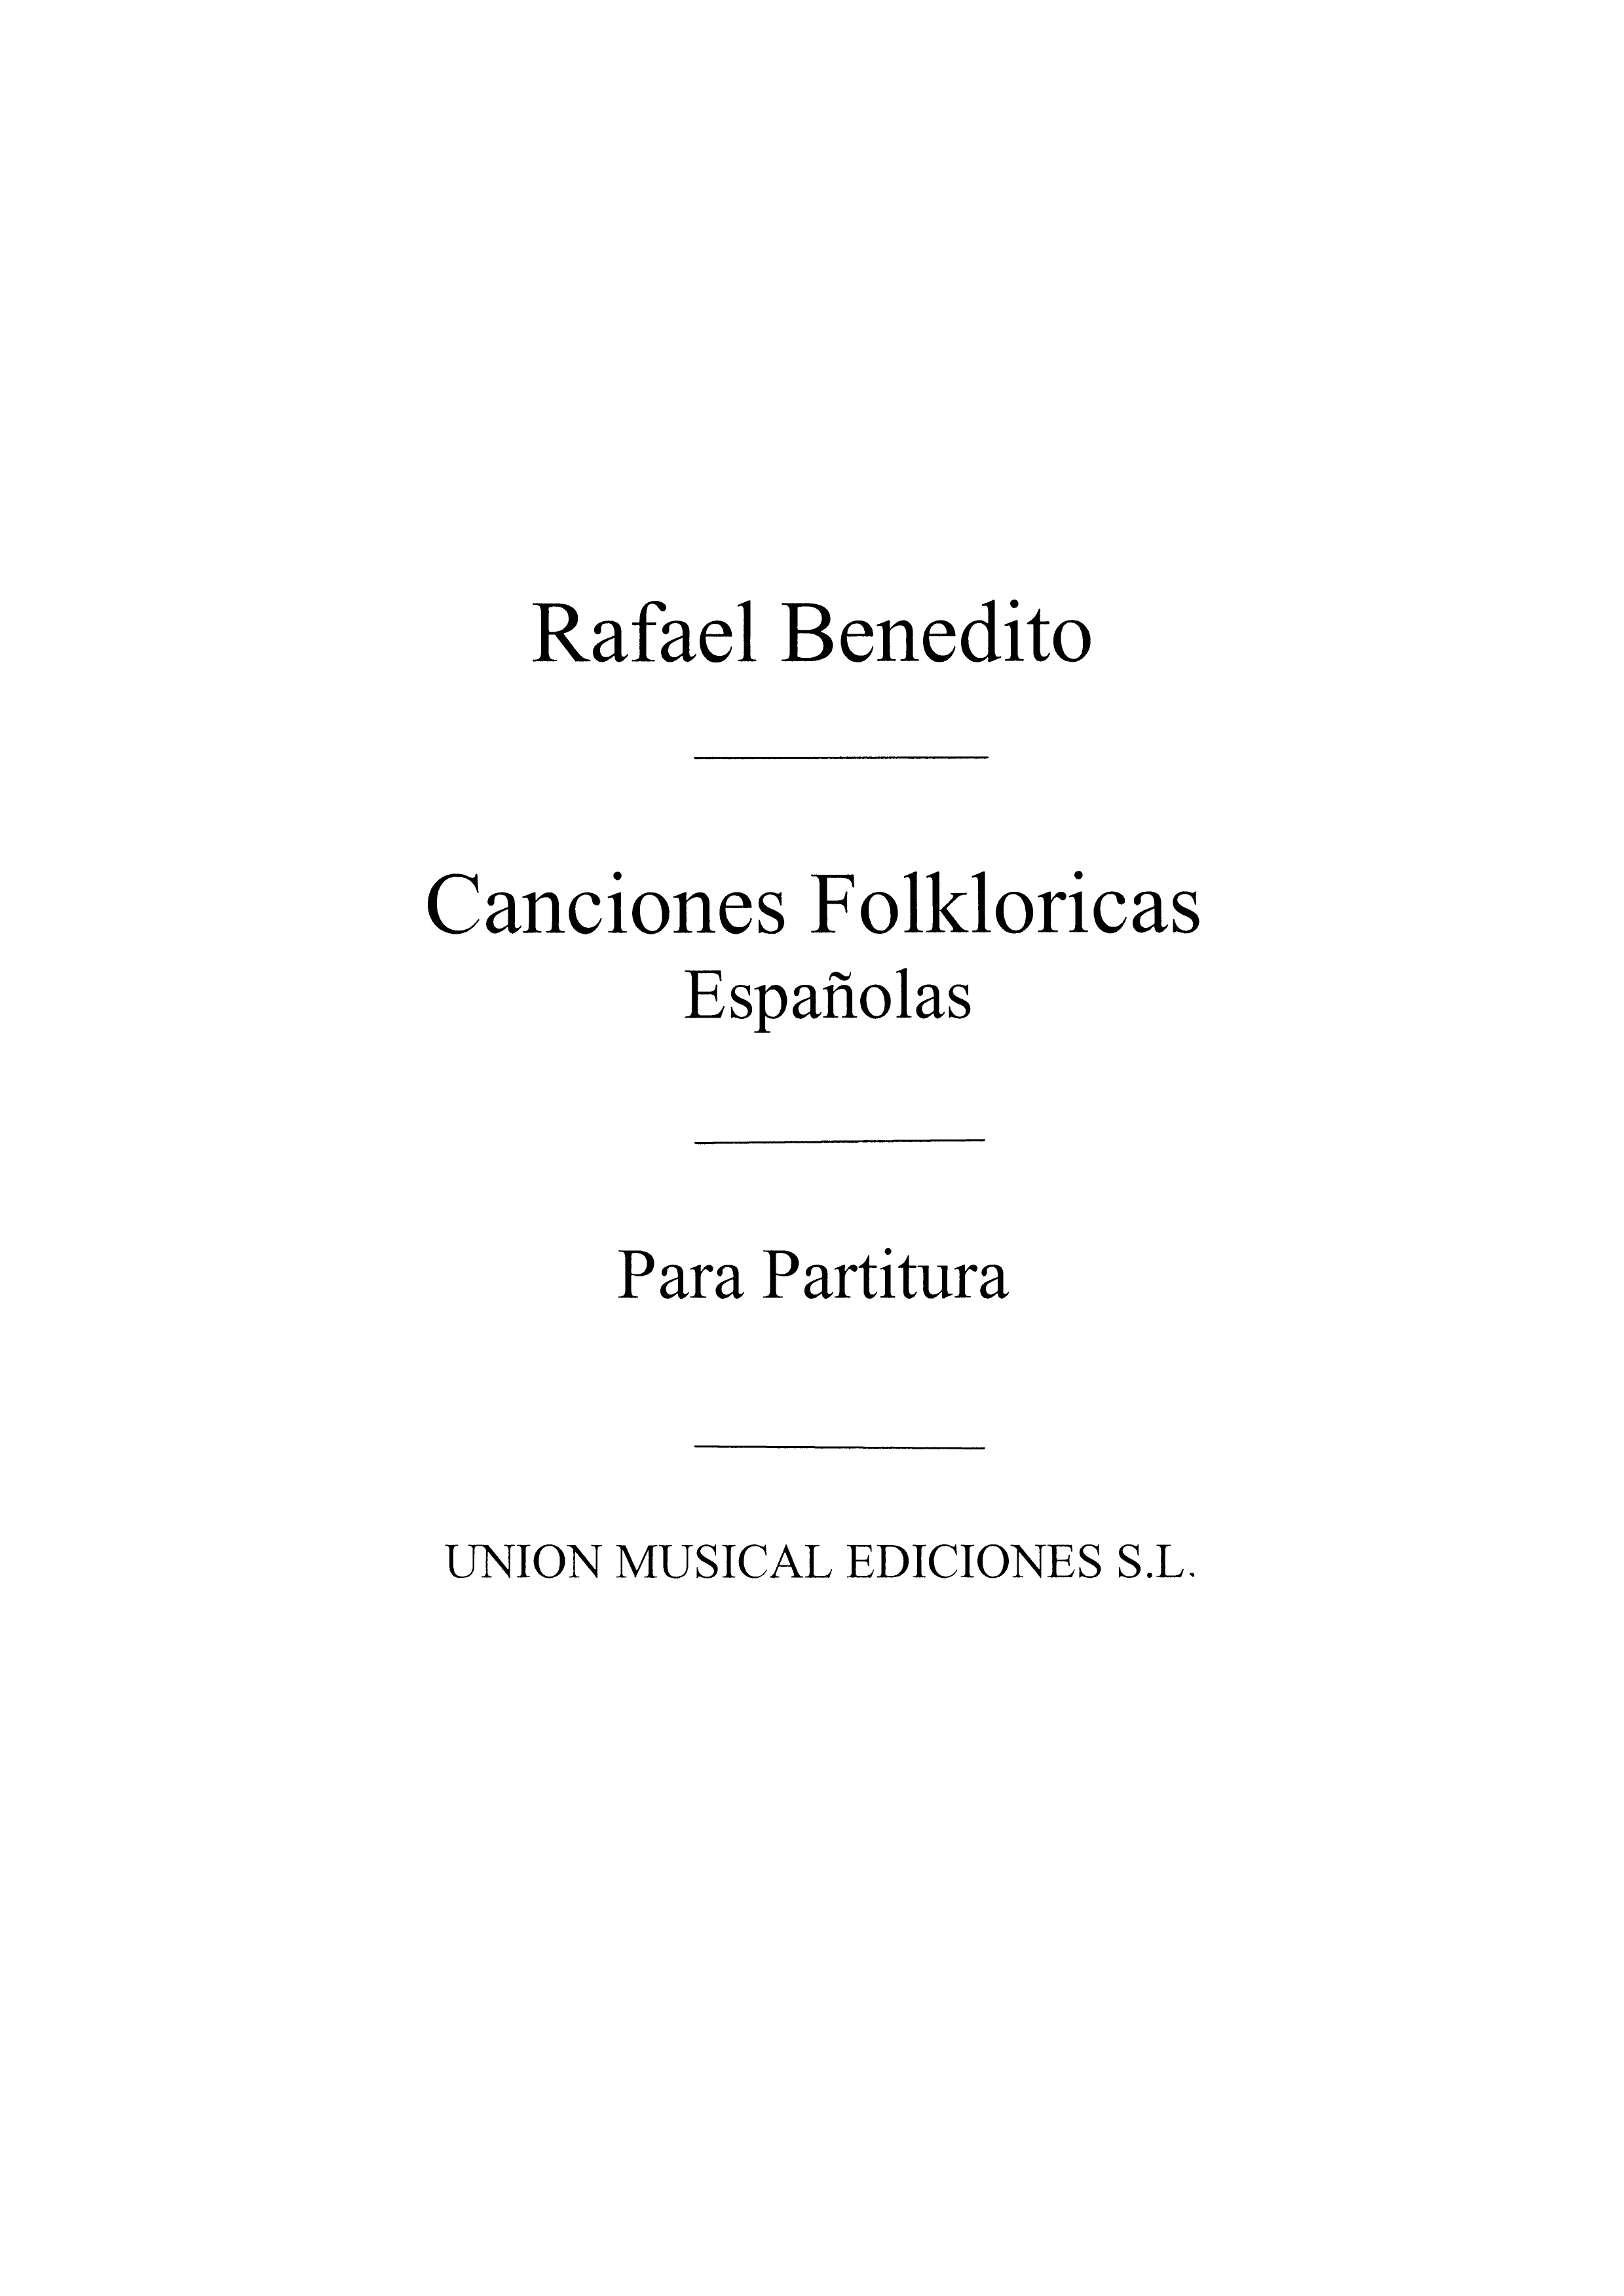 Rafael Benedito: Canciones Folkloricas Espanolas: Voice: Instrumental Work